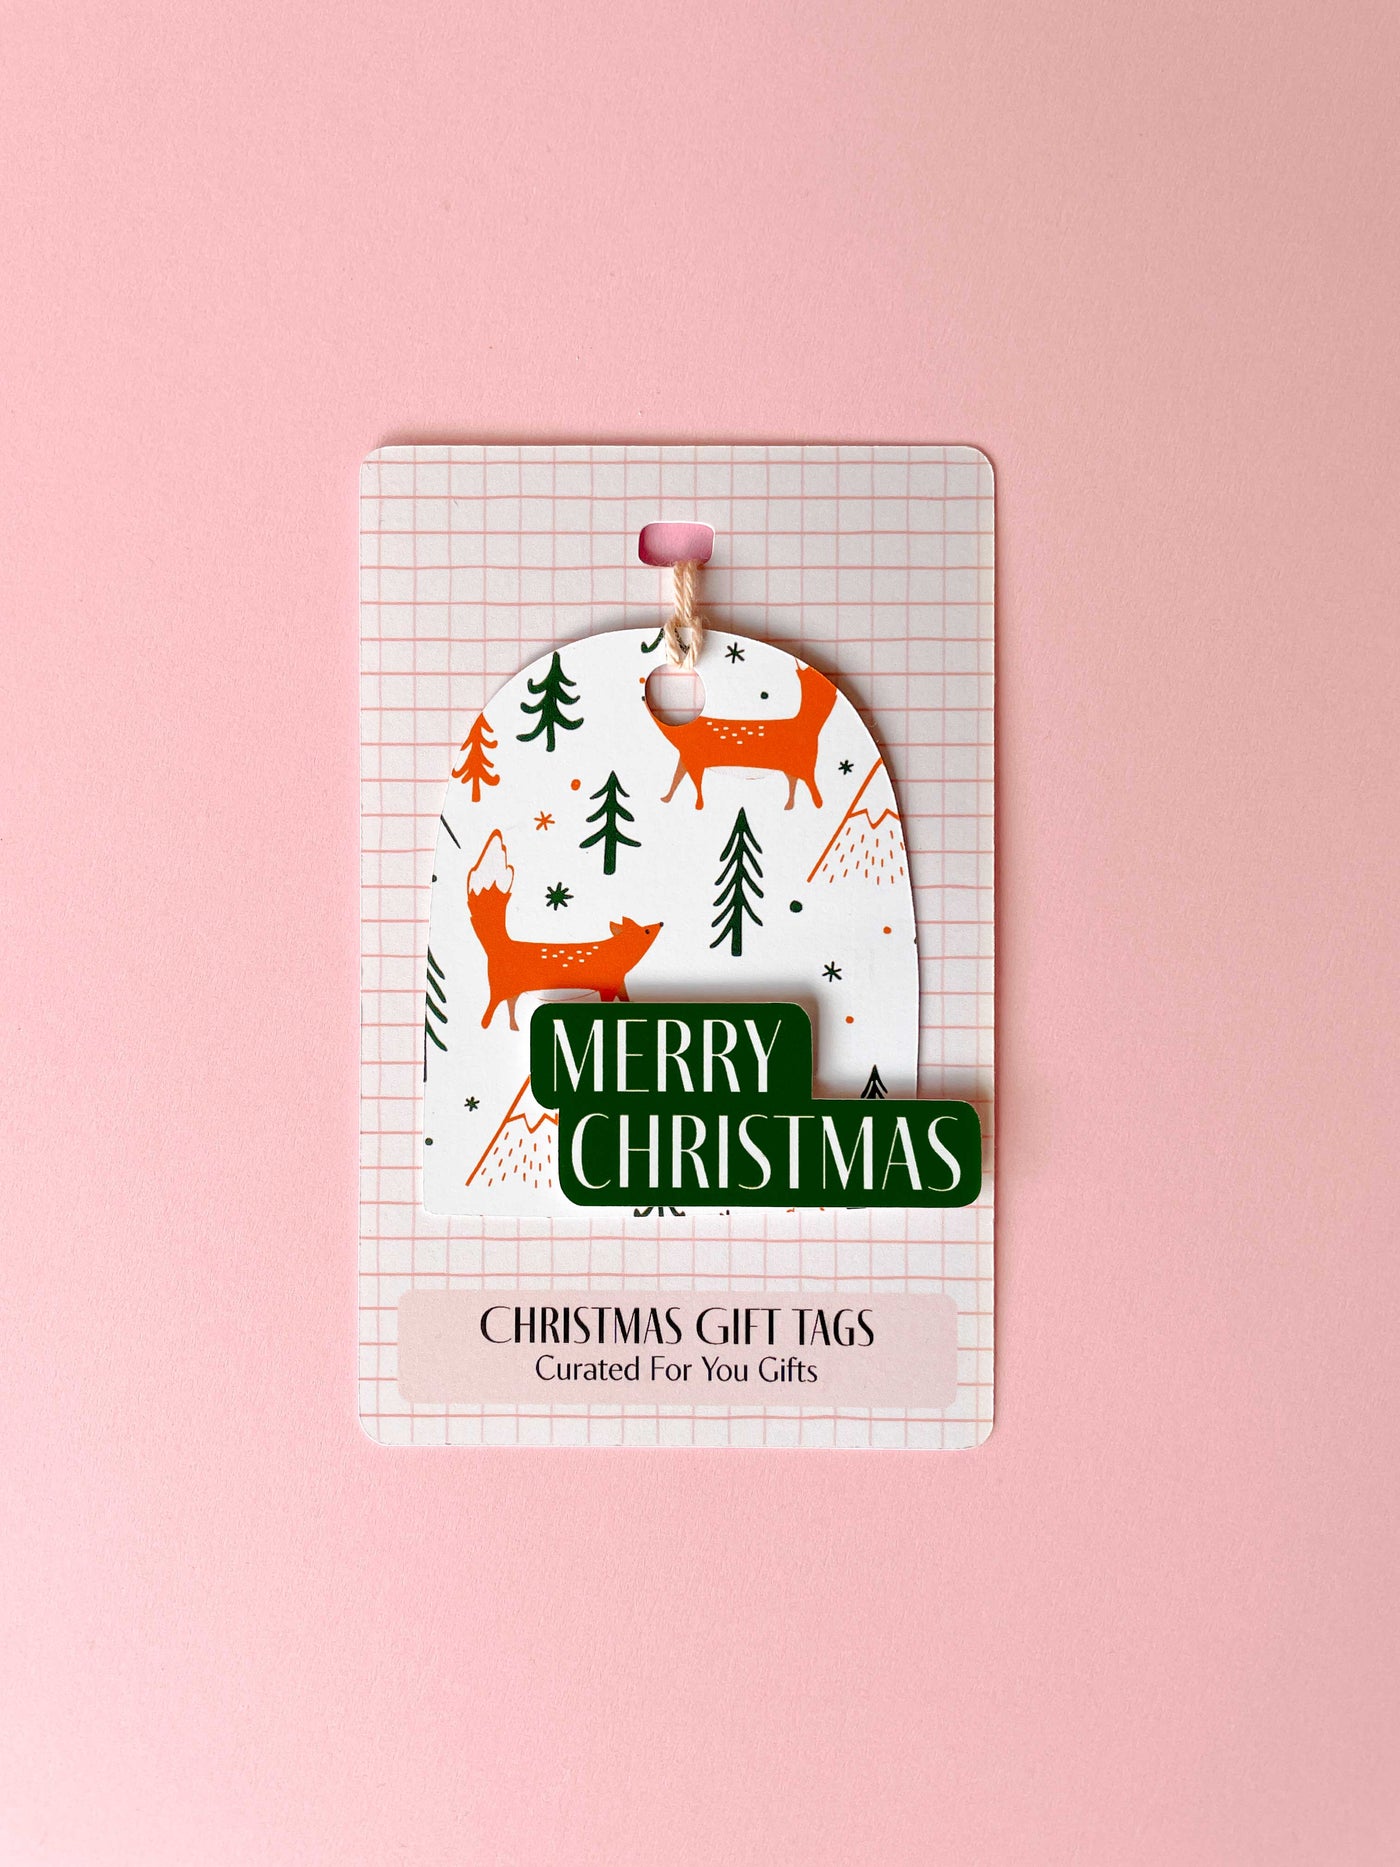 Christmas Gift Tags - Modern & Colorful